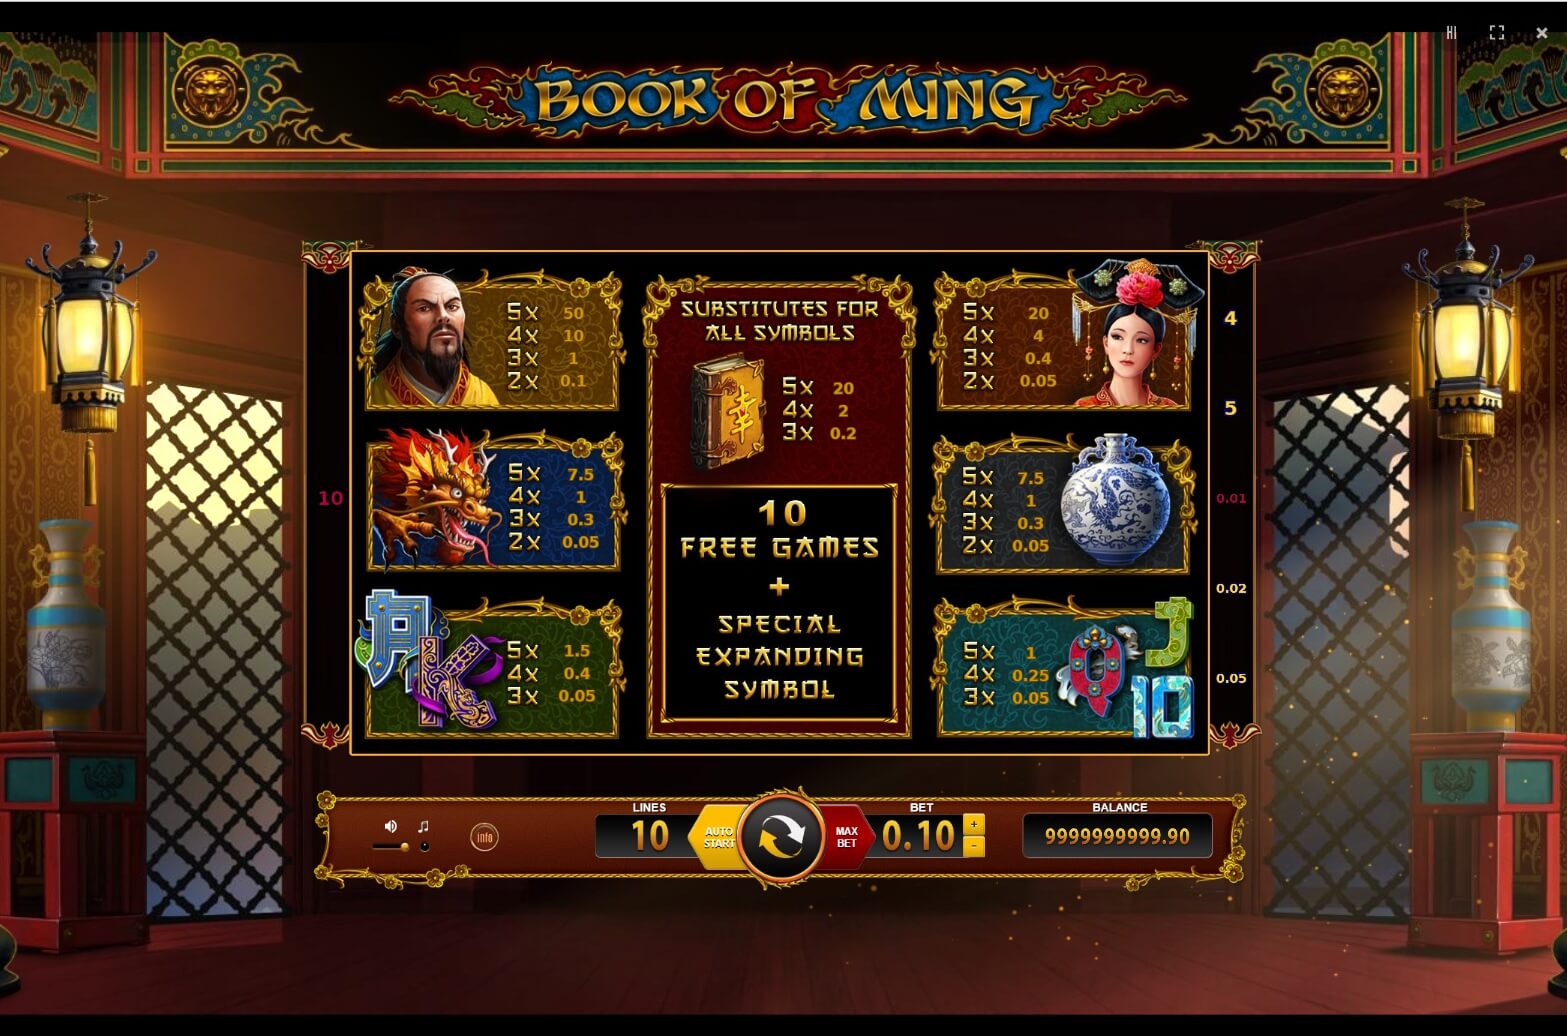 BF Games Online Casinos & Slot Machines